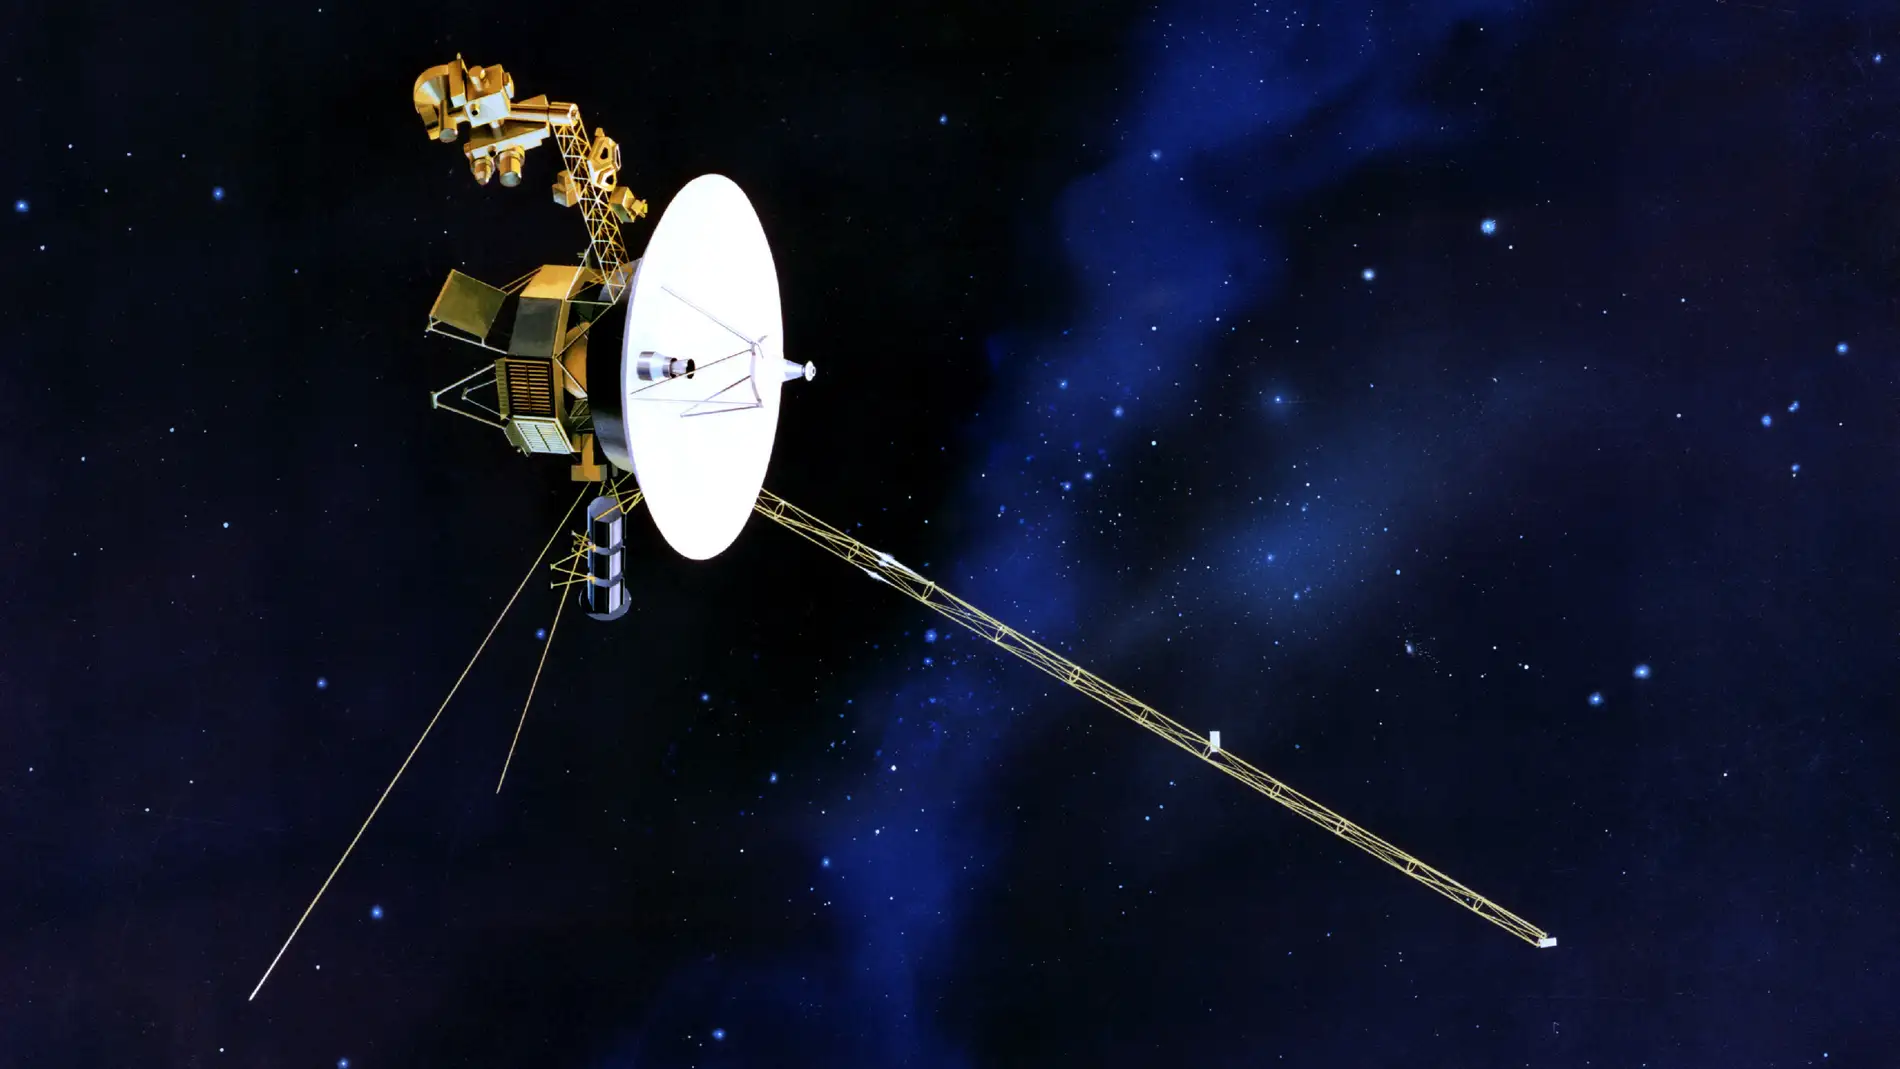 Que encontro la Voyager 2 cuando cruzo al espacio interestelar